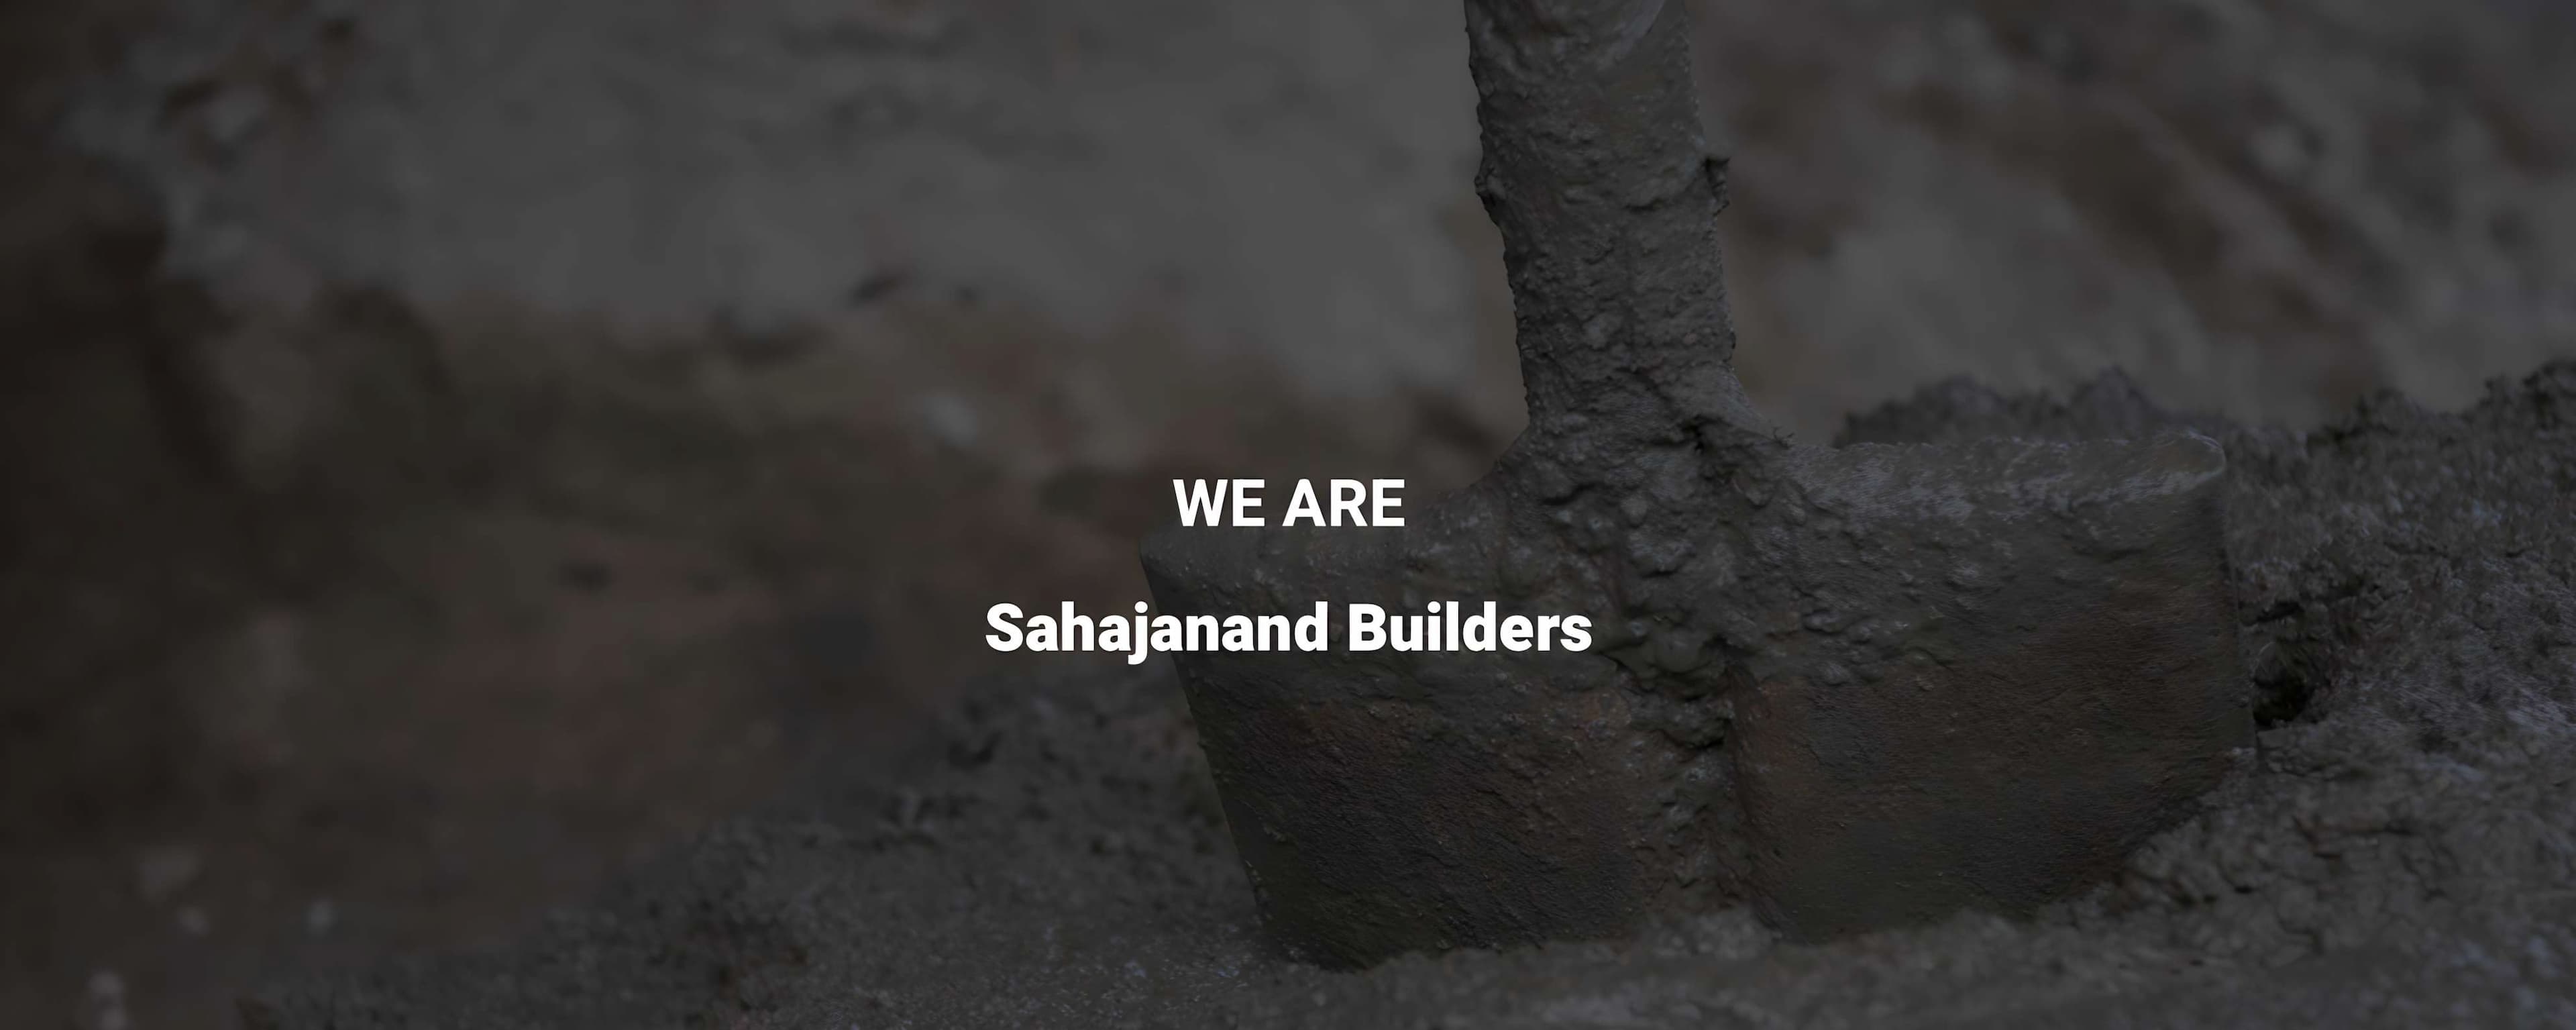 Sahajanand Builders